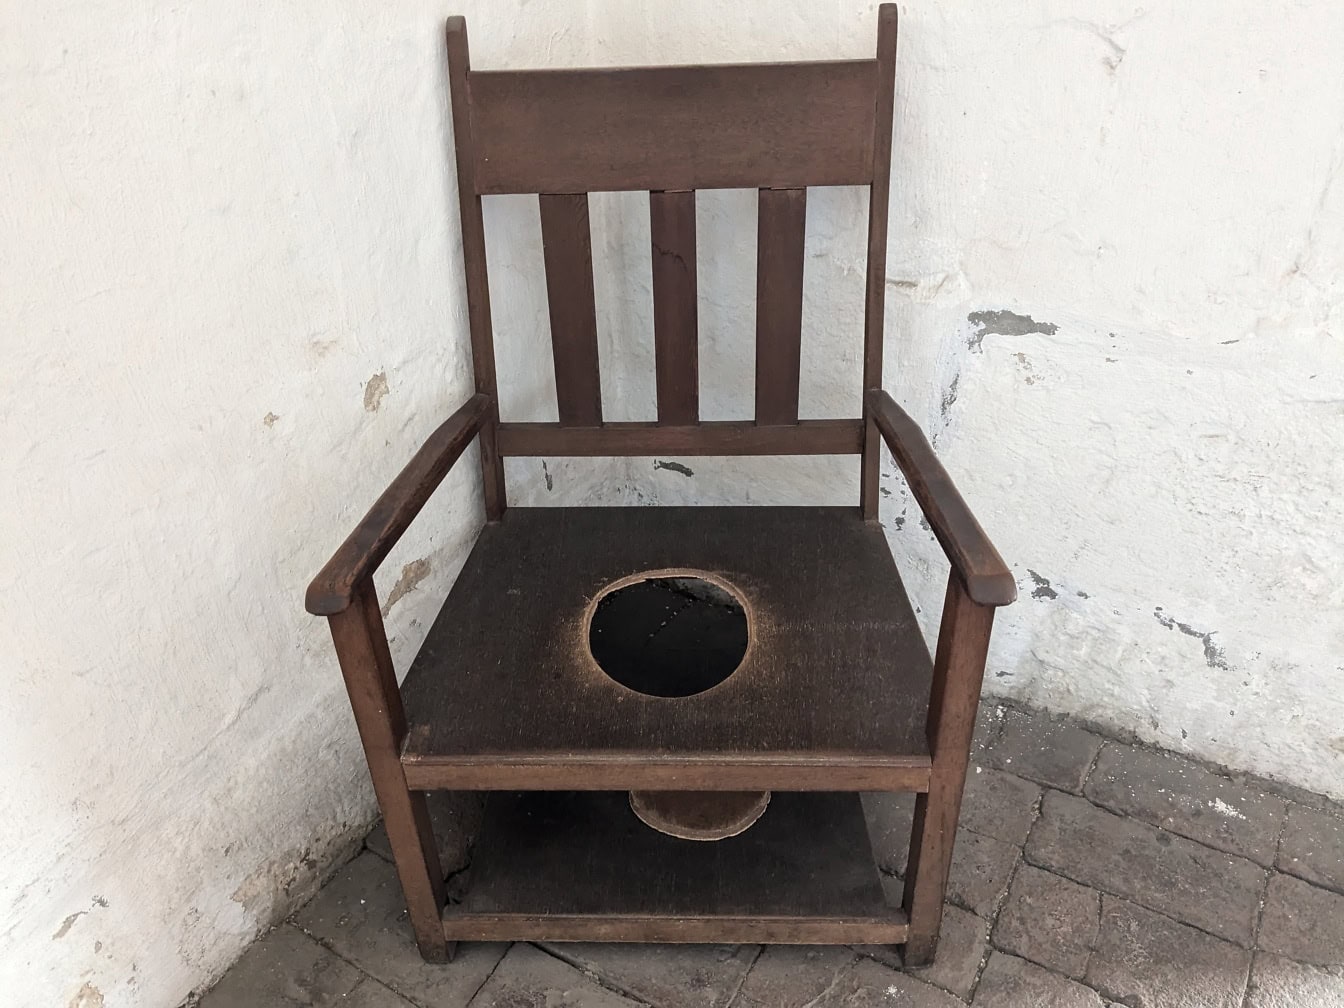 Peru’daki Arequipa’daki Santa Catalina manastırında tuvalet olarak kullanılan ortasında bir delik olan eski ahşap sandalye